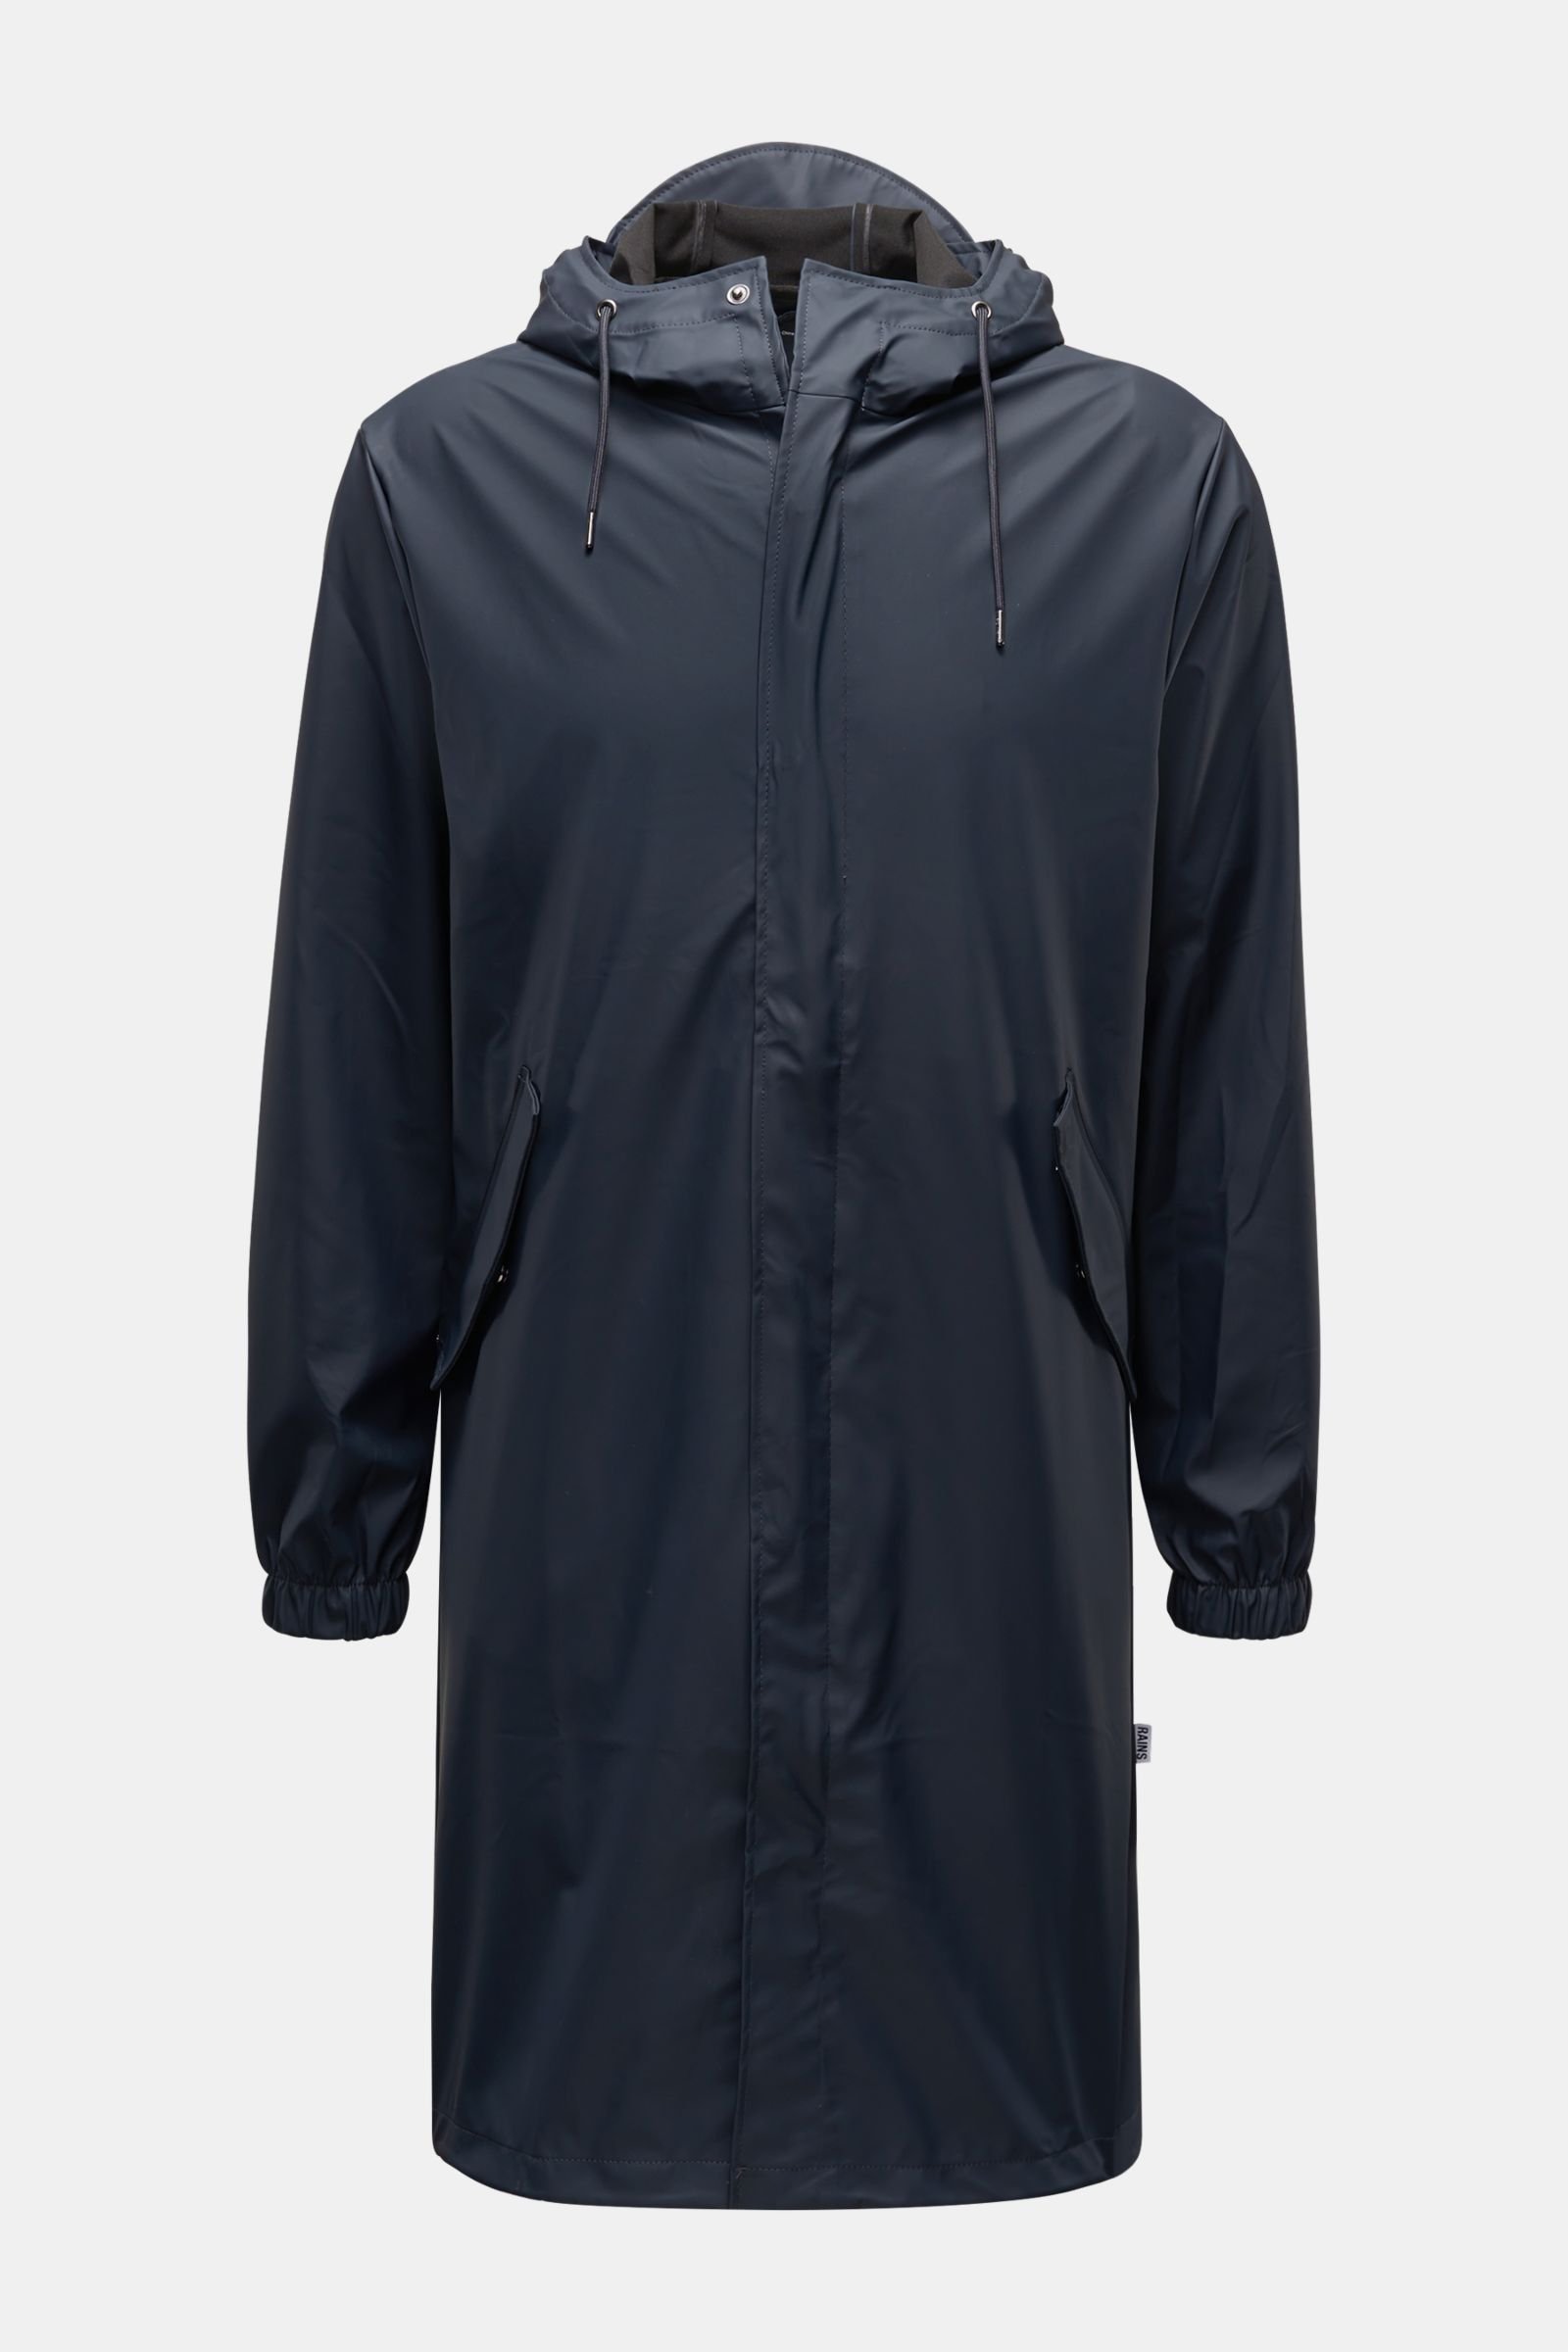 Rain coat 'Fishtail Parka' navy